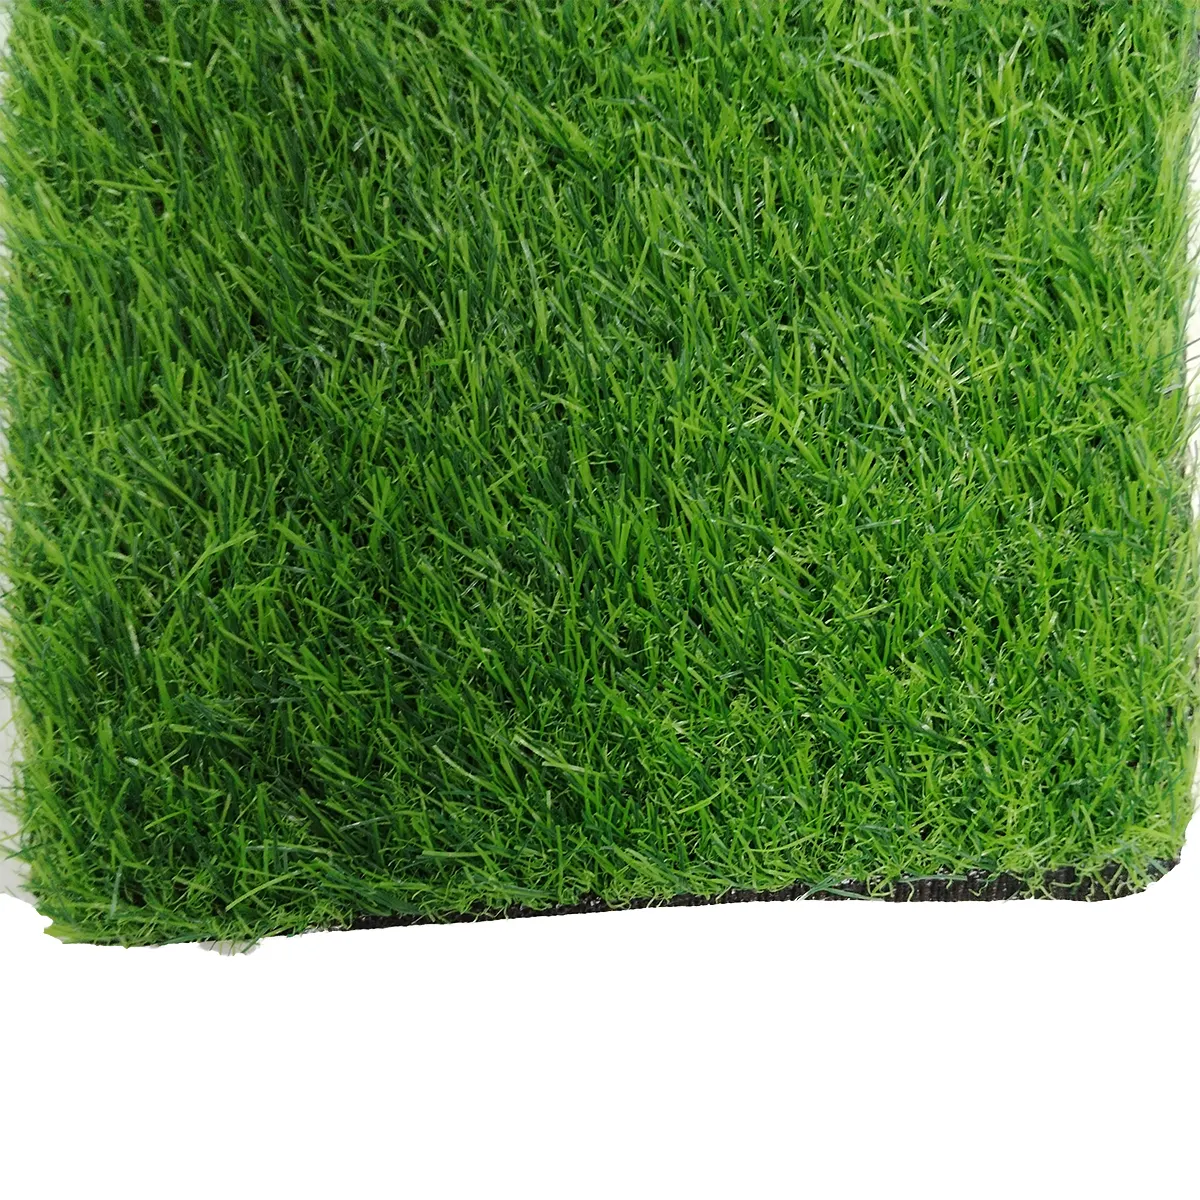 Karpet rumput buatan dalam ruangan karpet ruang olahraga karpet lantai rumput karpet lembut